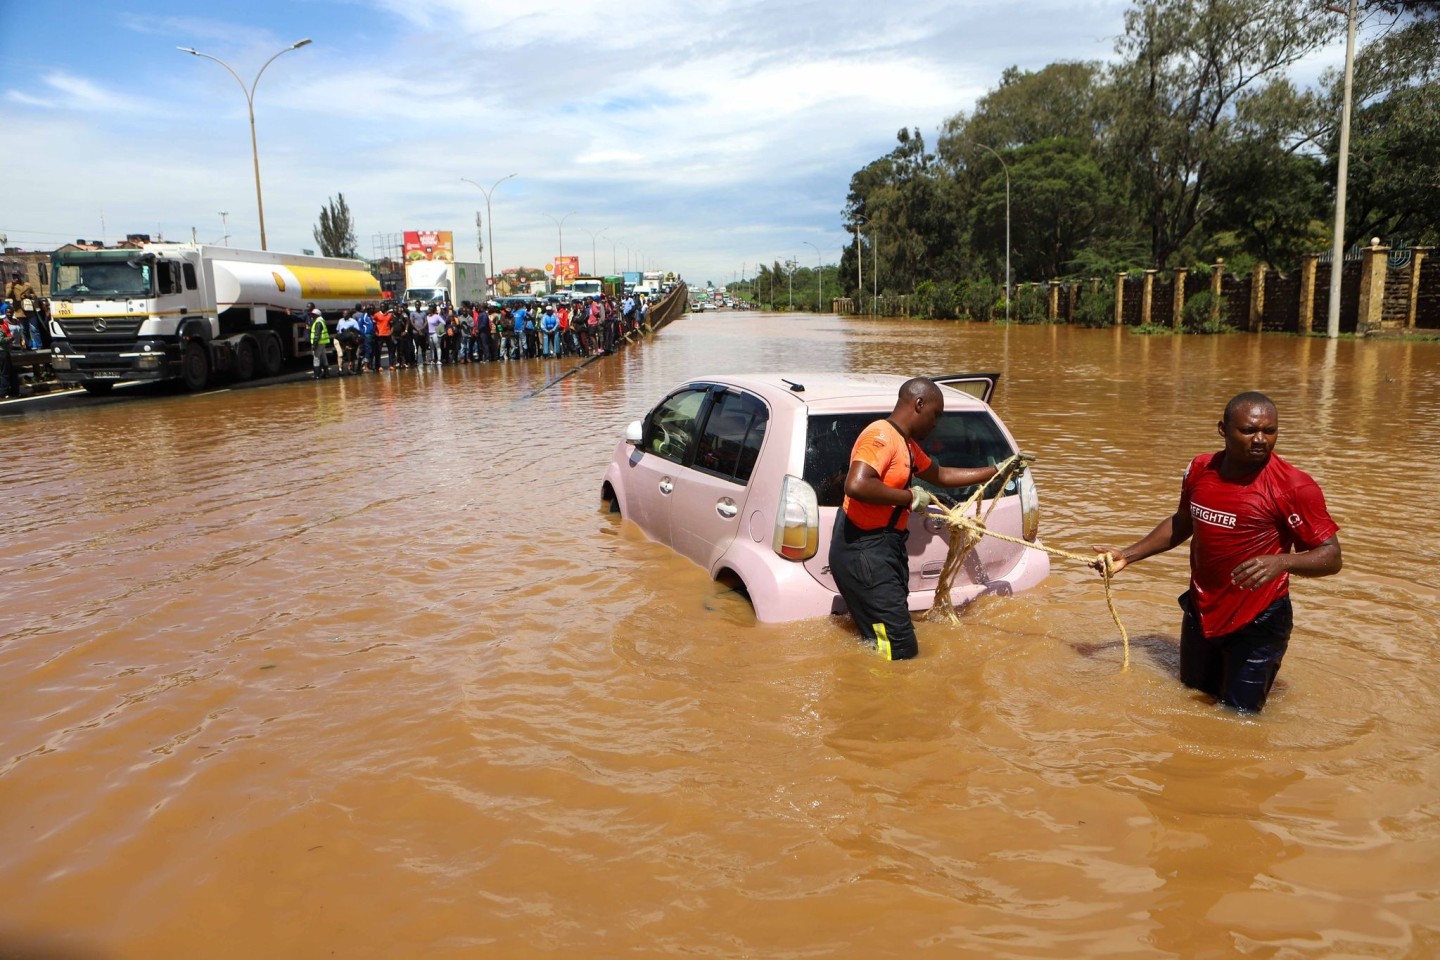 Starker Regen und Überschwemmungen machen nach Angaben des UN-Nothilfebüros OCHA seit März den Ländern Tansania, Burundi, Kenia, Somalia, Ruanda und weiteren Teilen Ostafrikas schwer zu ...